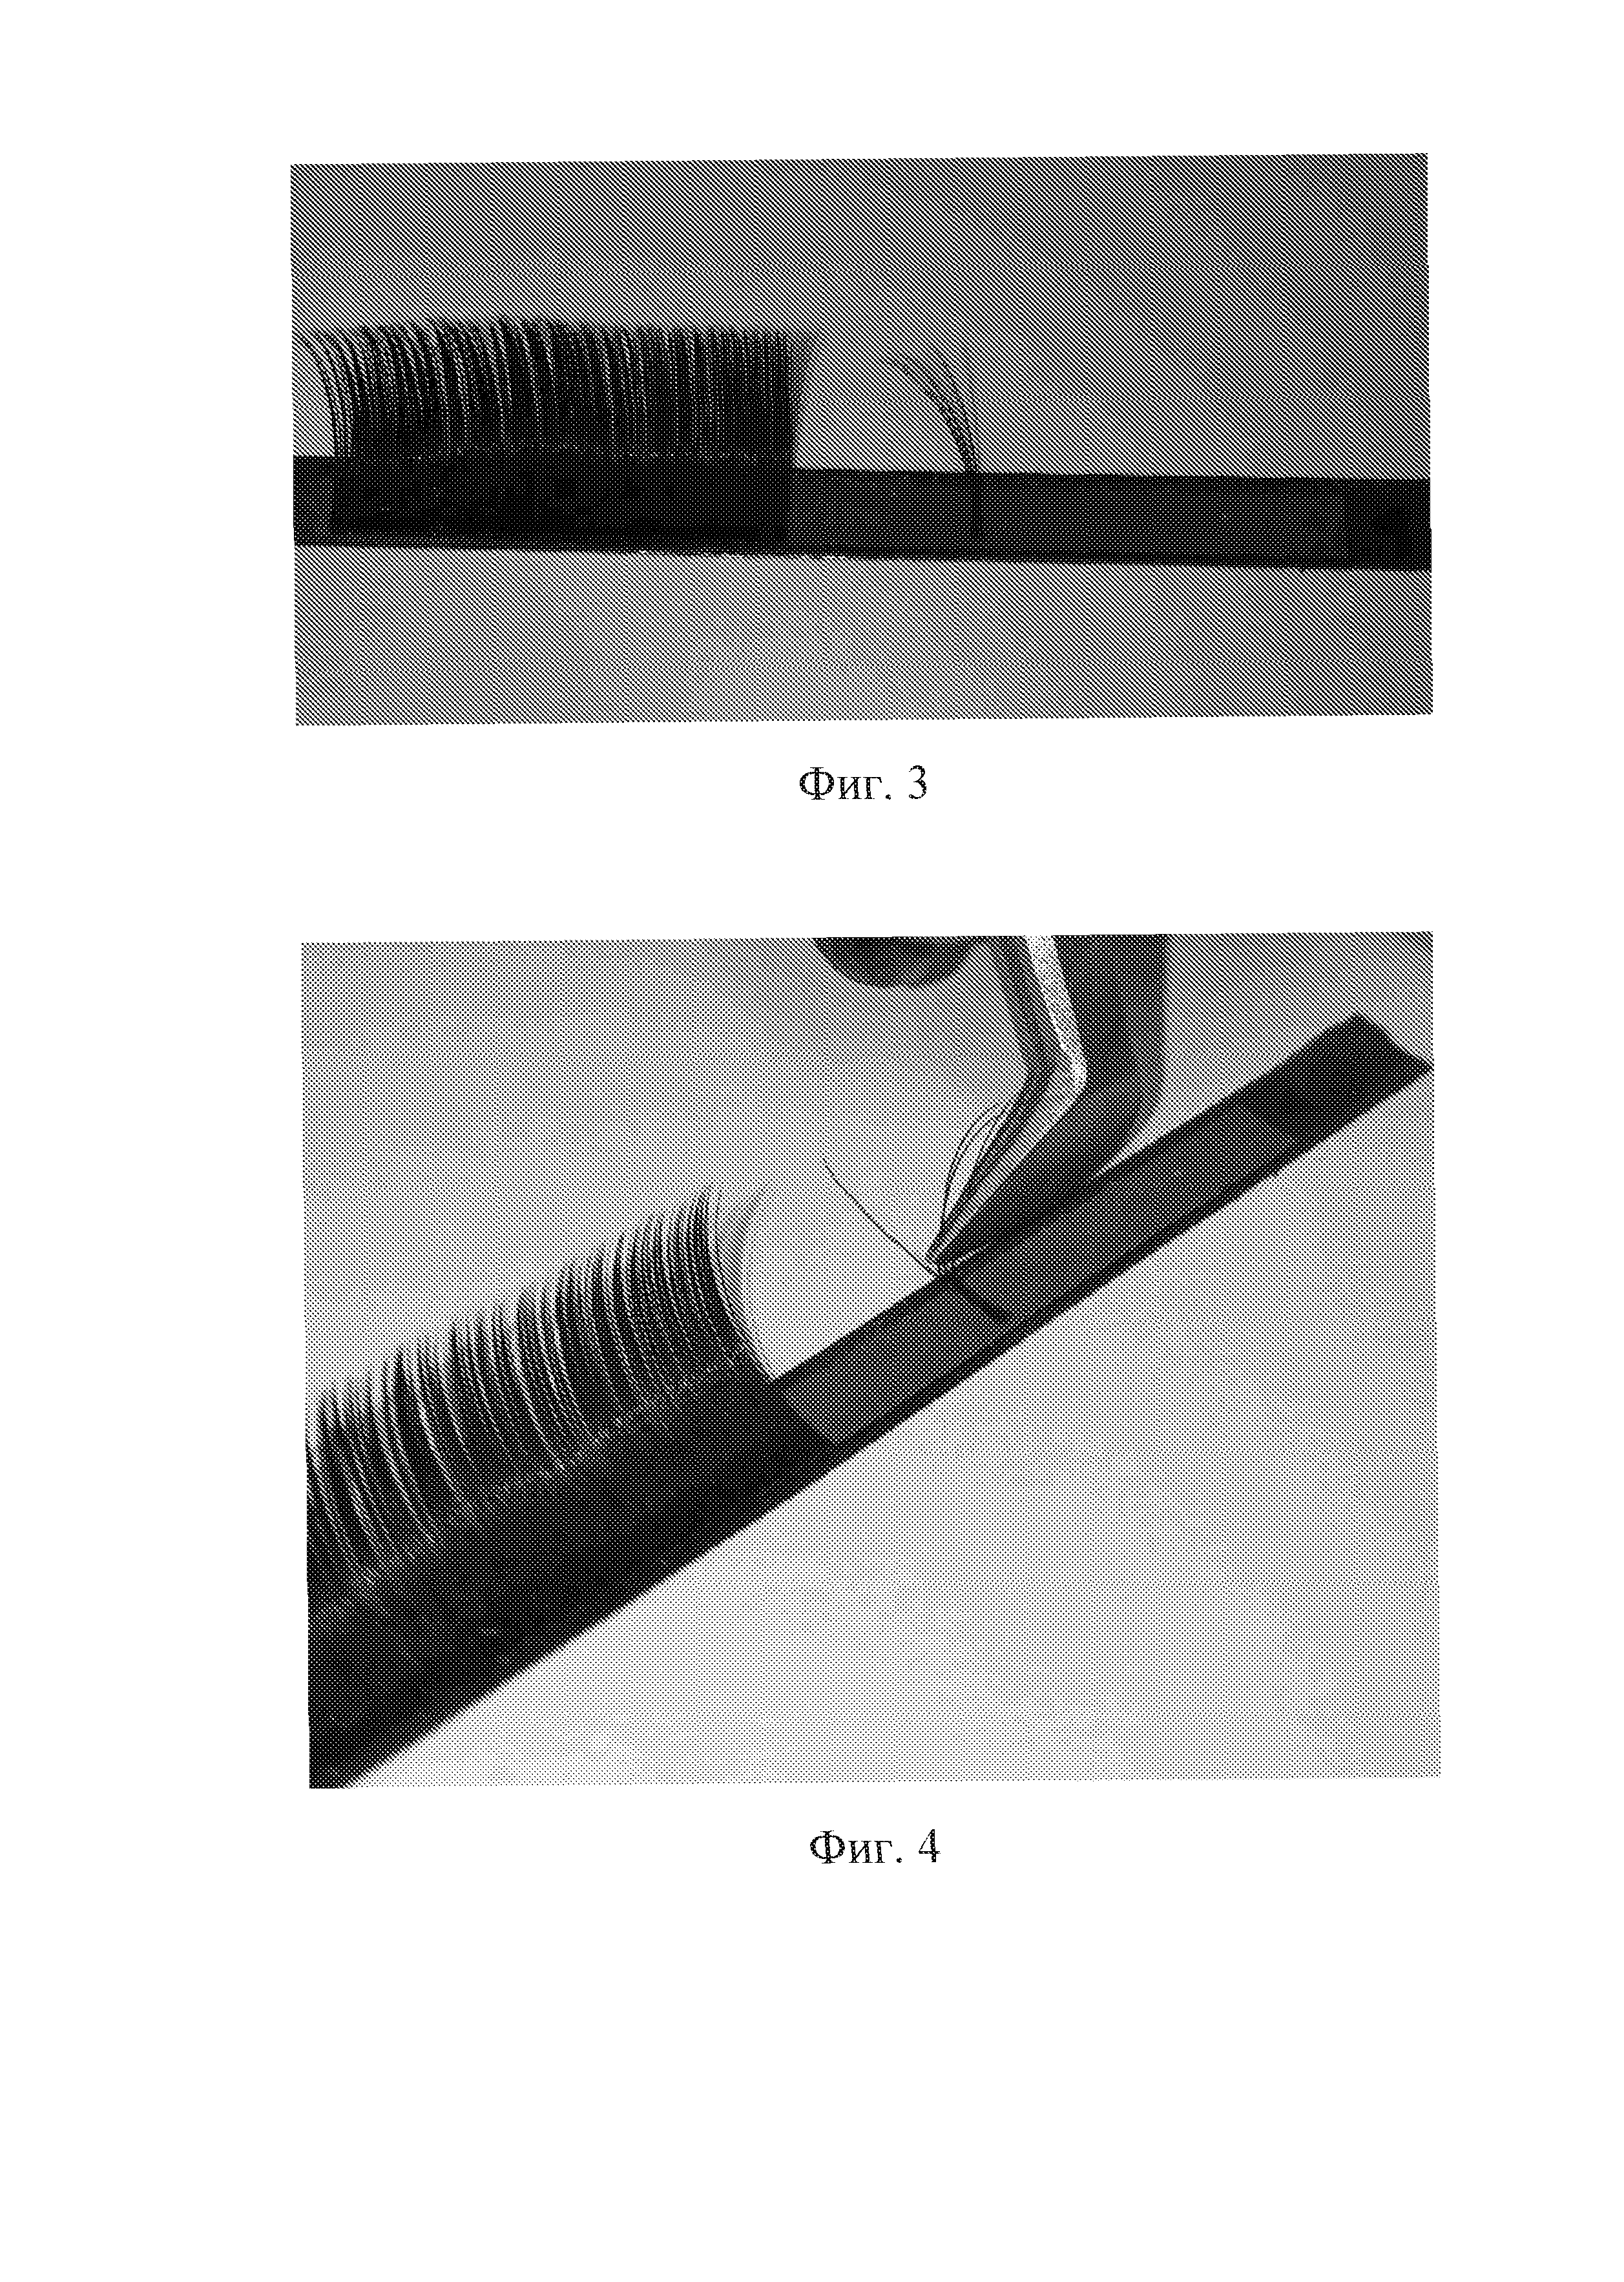 RU2607287C1 - Способ формирования пучка в объемном наращивании ресниц - Google Patents